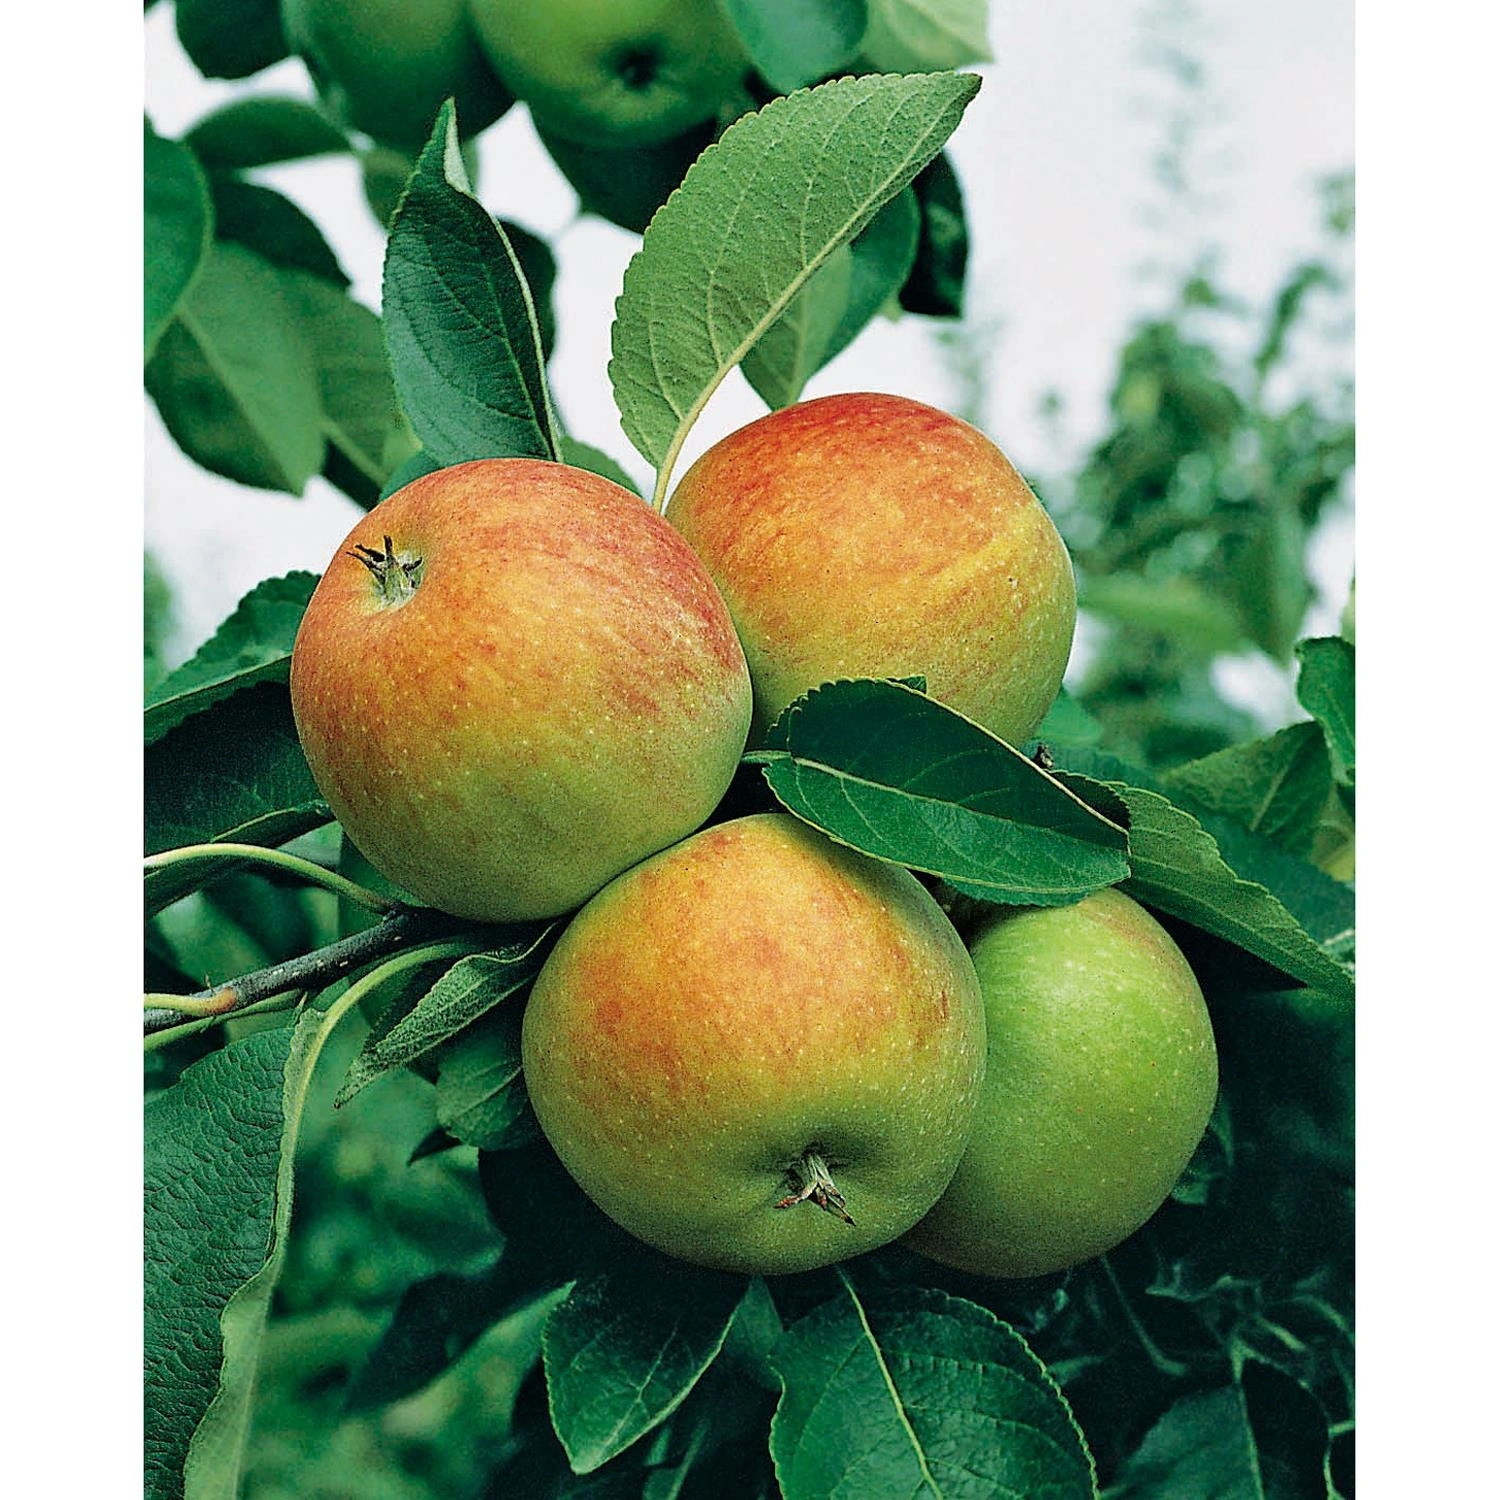 Gartenkrone Apfel, Malus domestica »James Grieve«, Früchte: süß-säuerlich